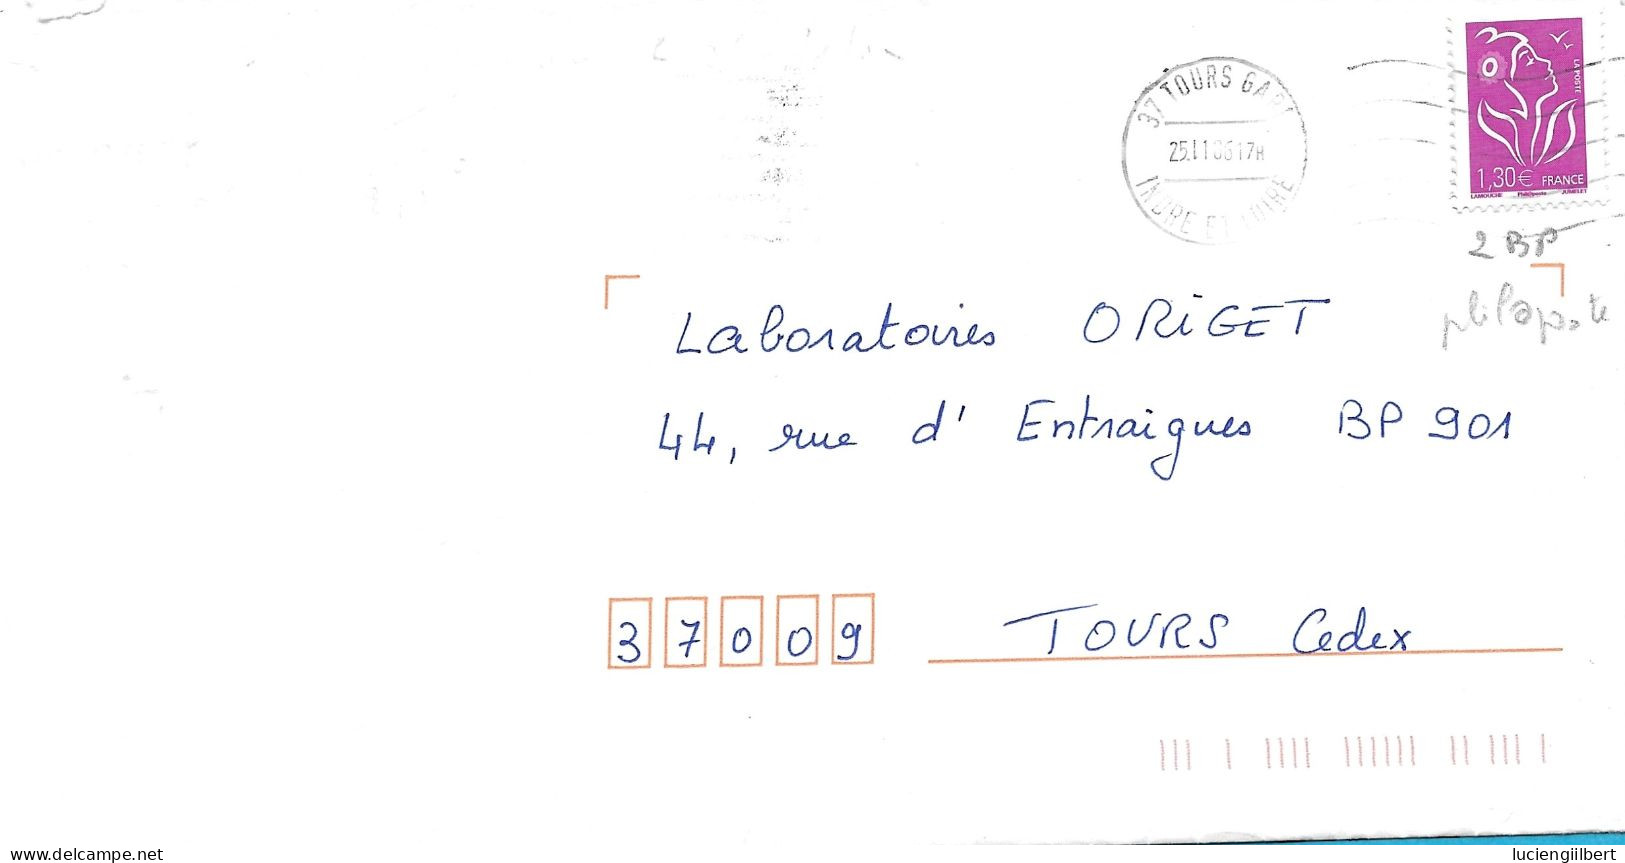 TIMBRE N° 3971   - MARIANNE DE LA MOUCHE     - TARIF DU 1 10 06 AU 28 2 08 3E ECHELON -  SEUL SUR LETTRE - 2006 - Tarifs Postaux